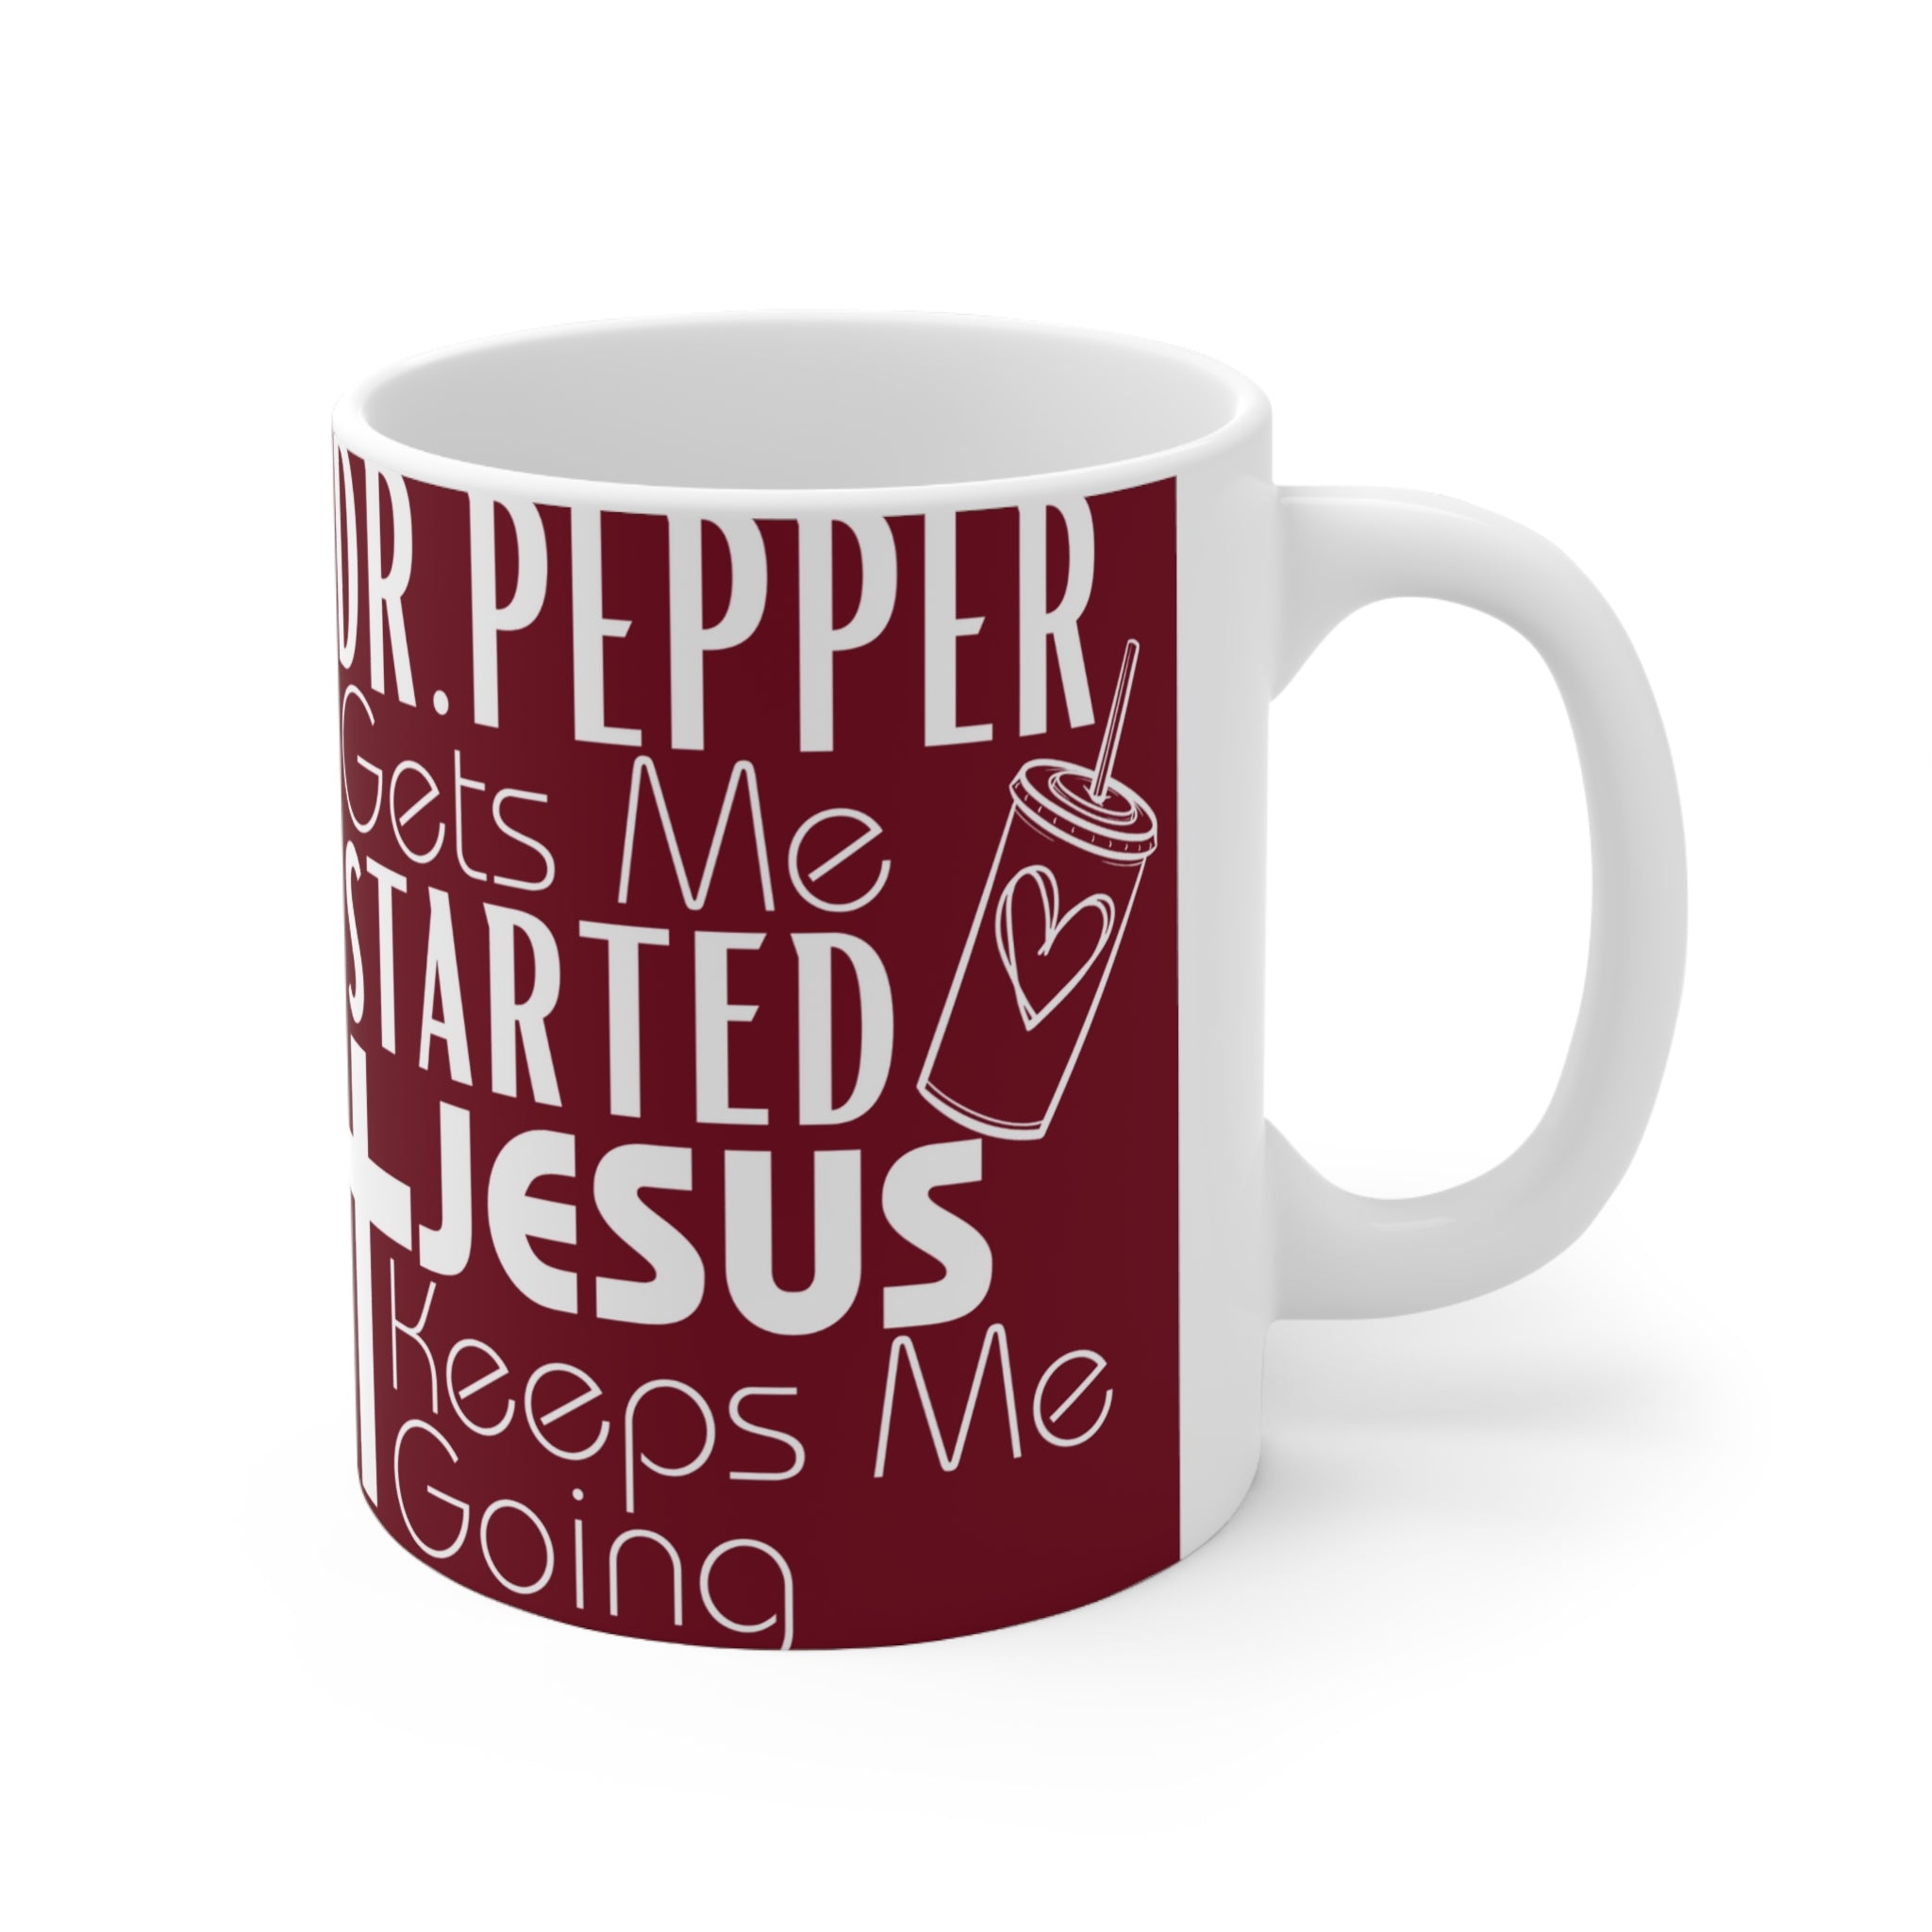 Dr Pepper Gets me Started, Jesus Keeps Me Going Ceramic Mug